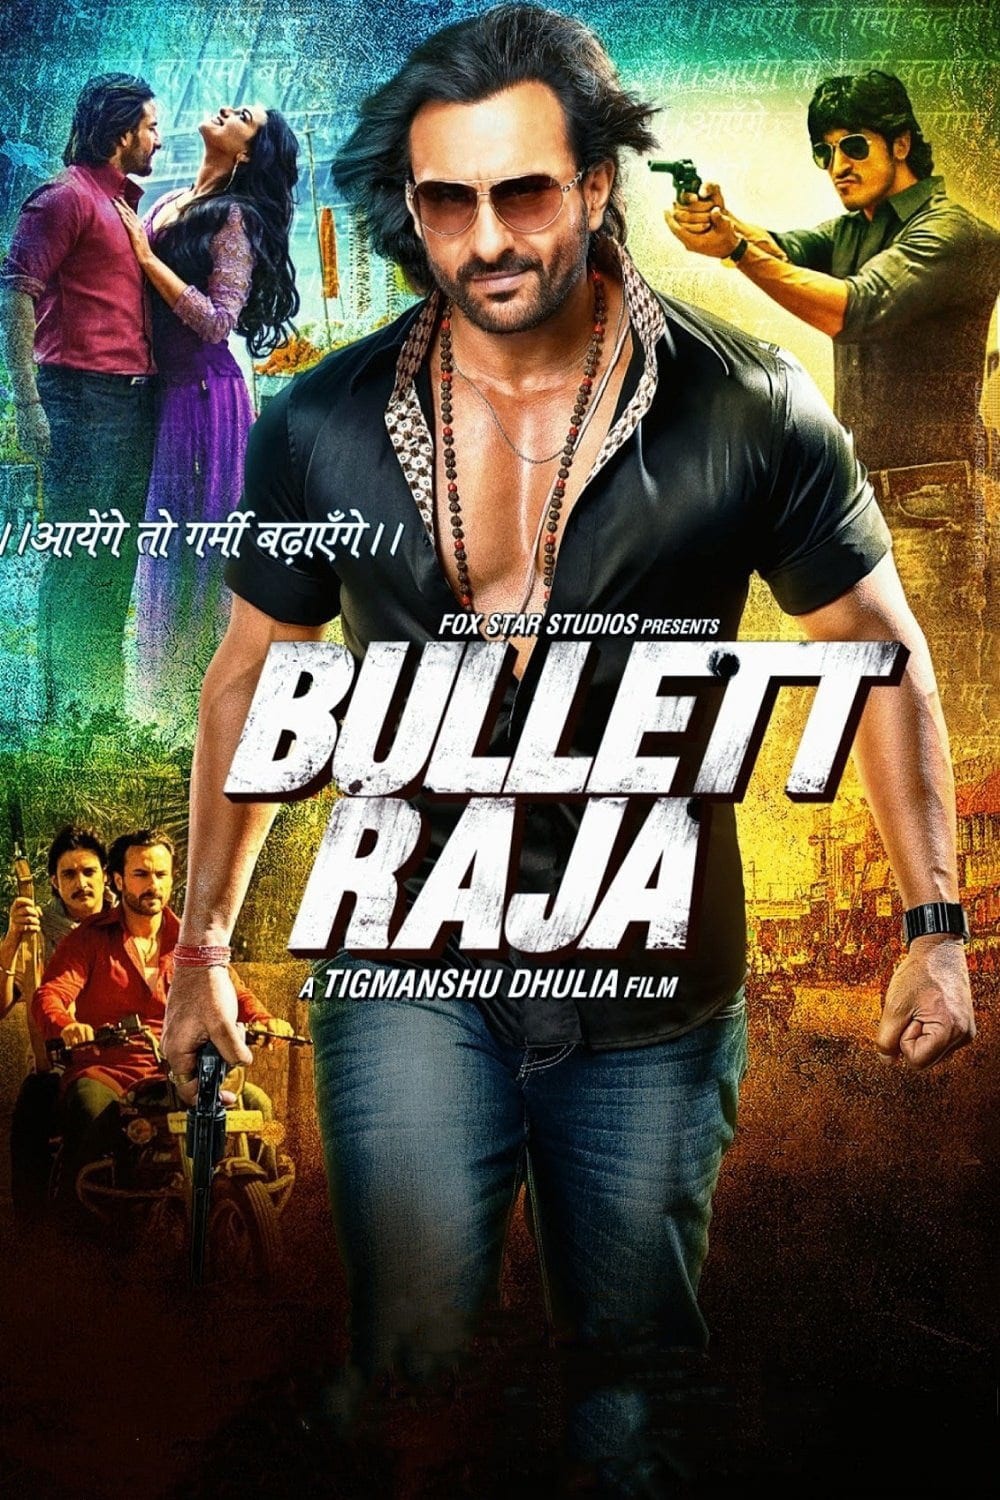 Poster for the movie "Bullett Raja"